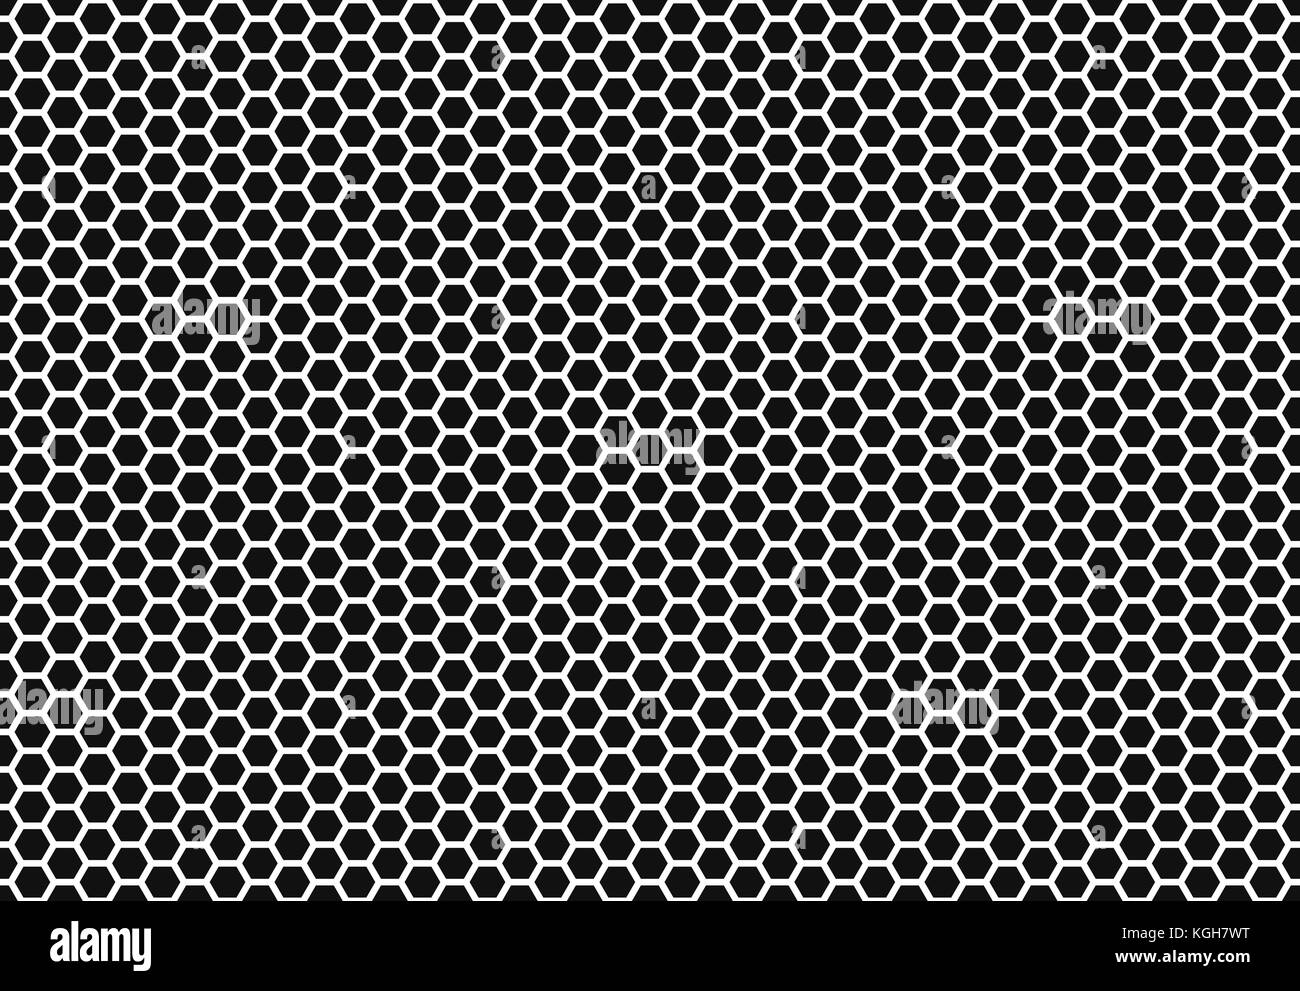 Hexagon Wabe nahtlose Hintergrund. Einfache und nahtlose Muster von wabenförmigen Zellen Bienen'. Abbildung. Vektor. Geometrische drucken. Stock Vektor